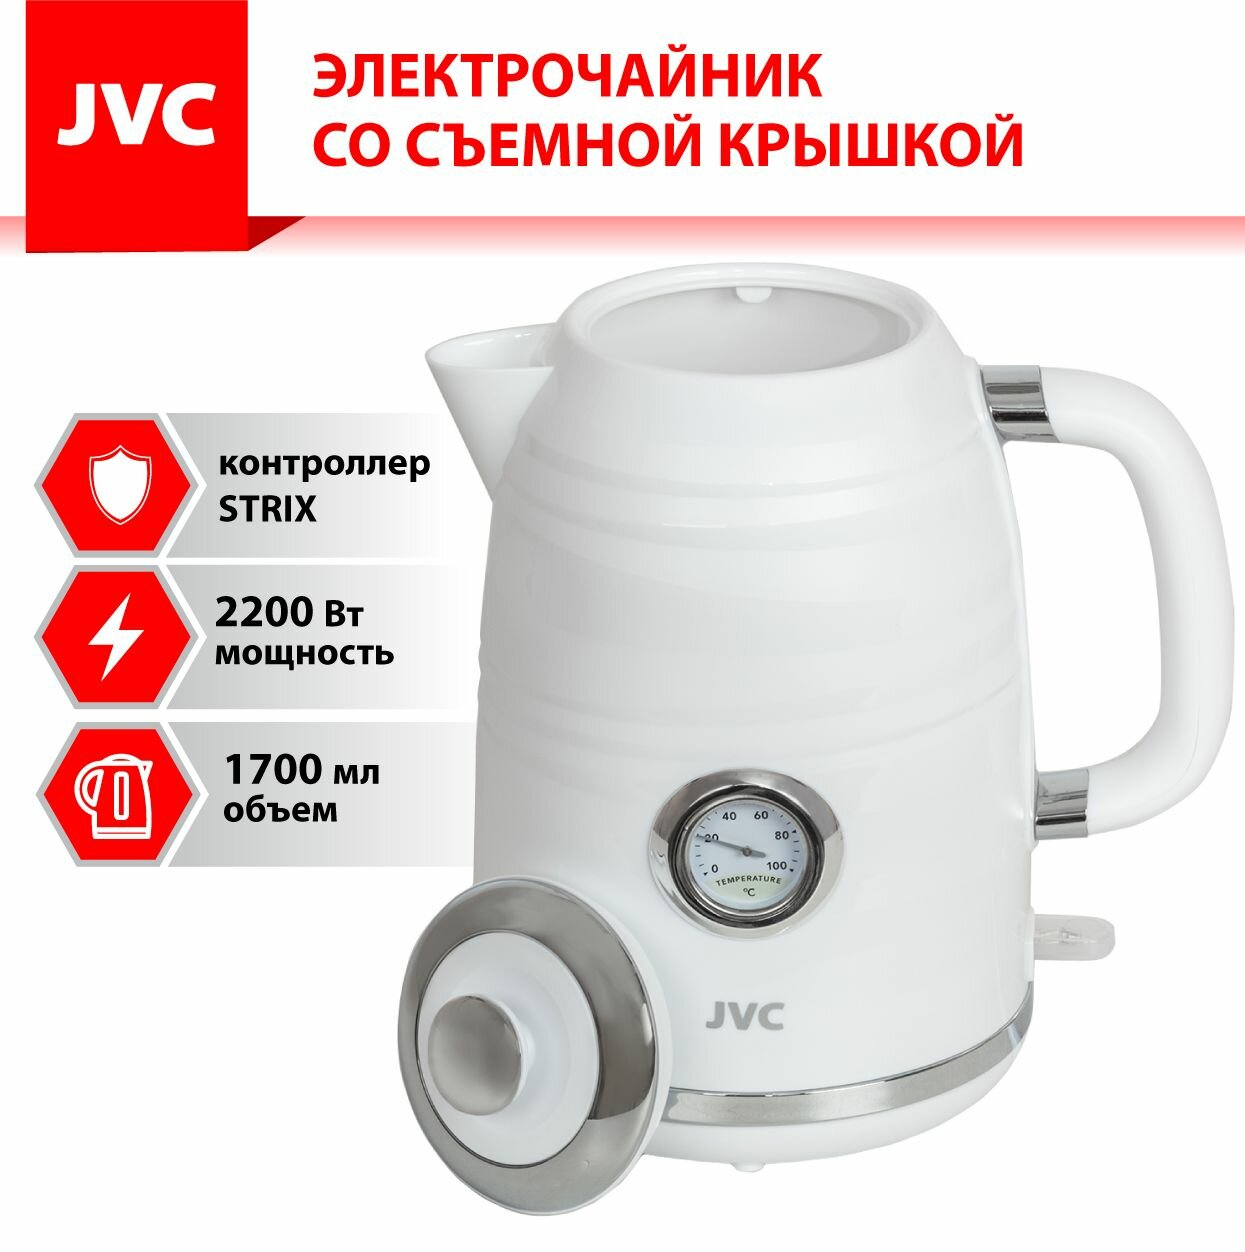 Чайник электрический JVC JK-KE1744 1,7 л с датчиком температуры, контроллер STRIX, съемная крышка, съемный фильтр от накипи, 2200 Вт